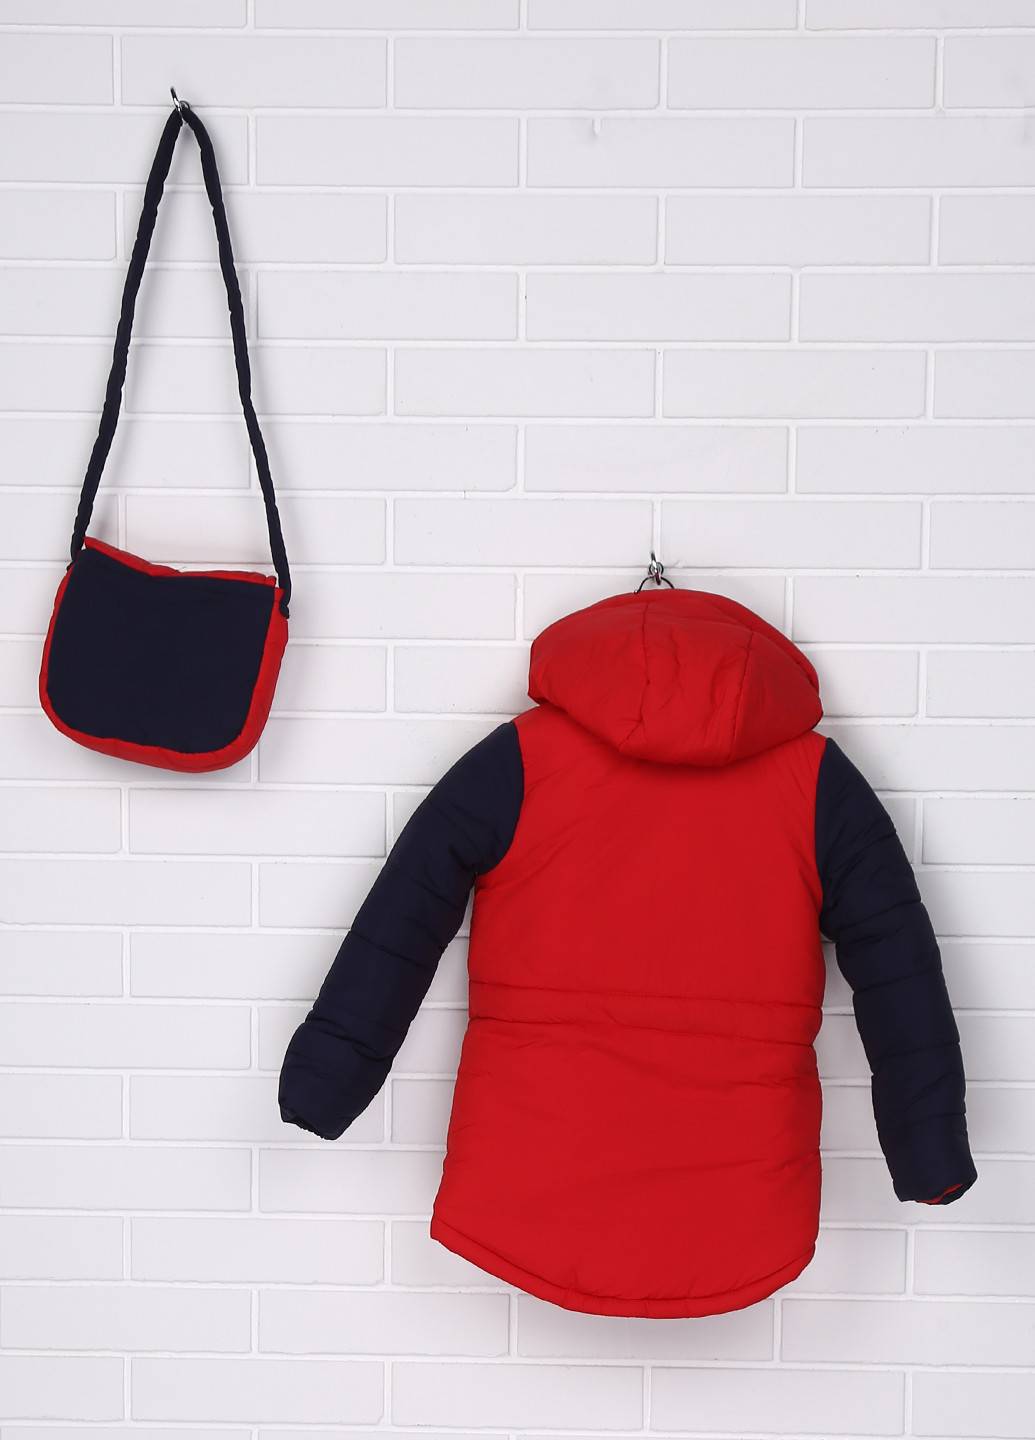 Красная зимняя куртка Одягайко